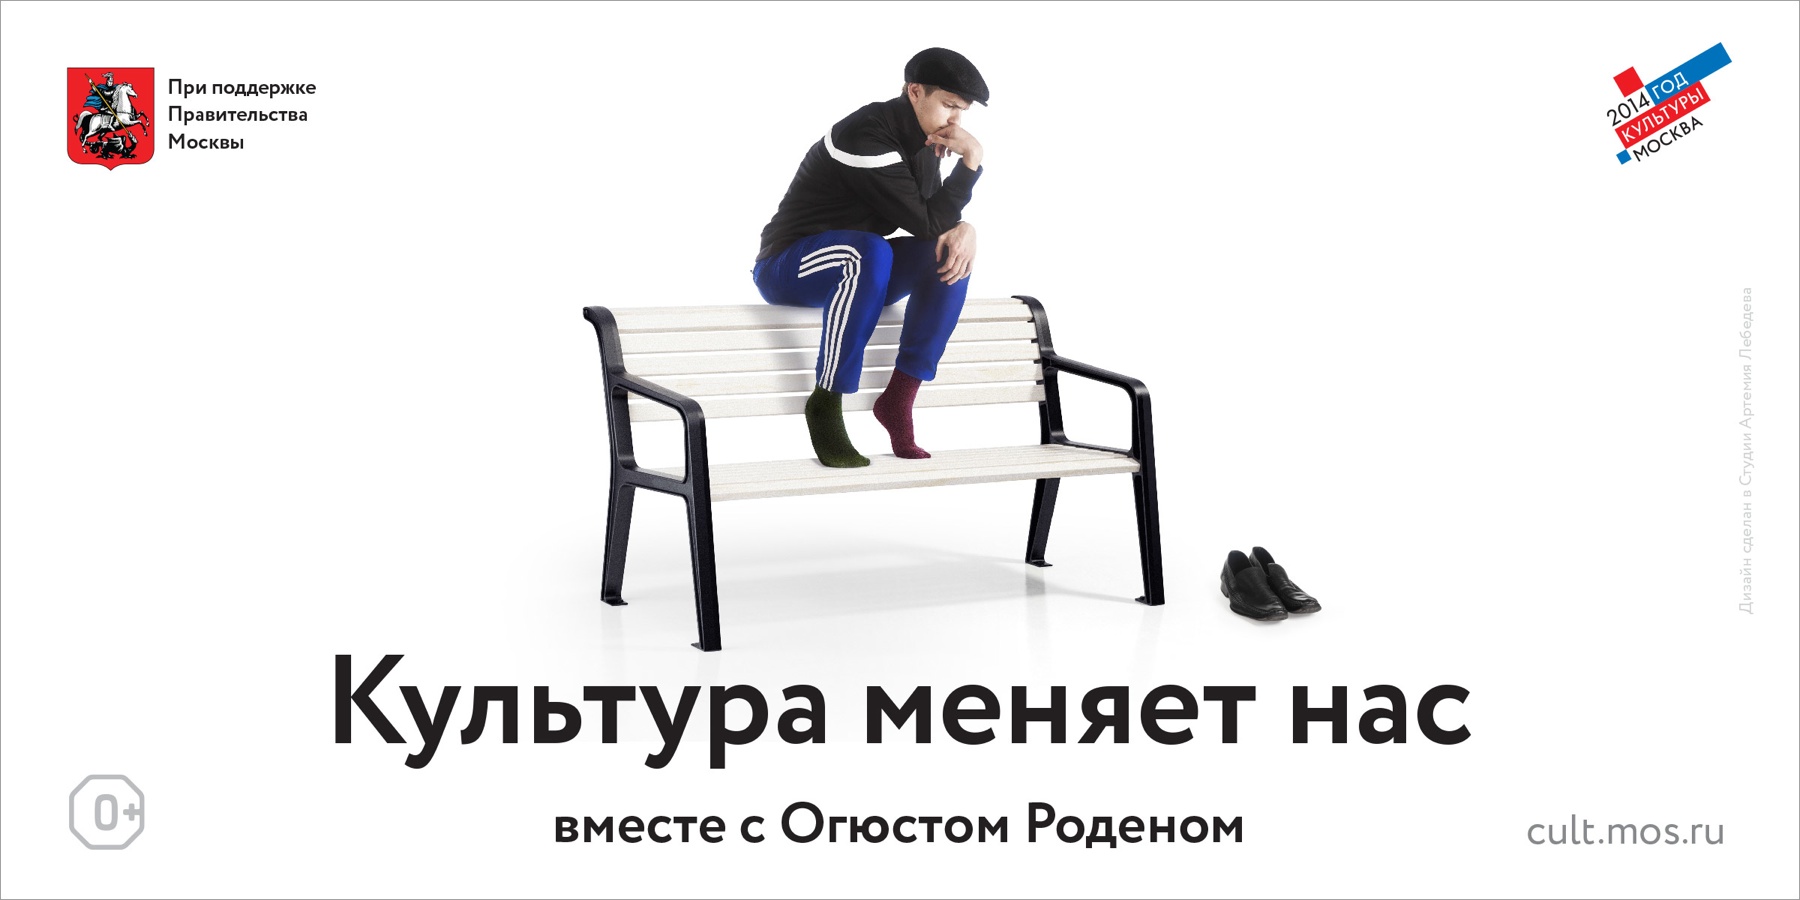 俄罗斯文化部宣传广告设计